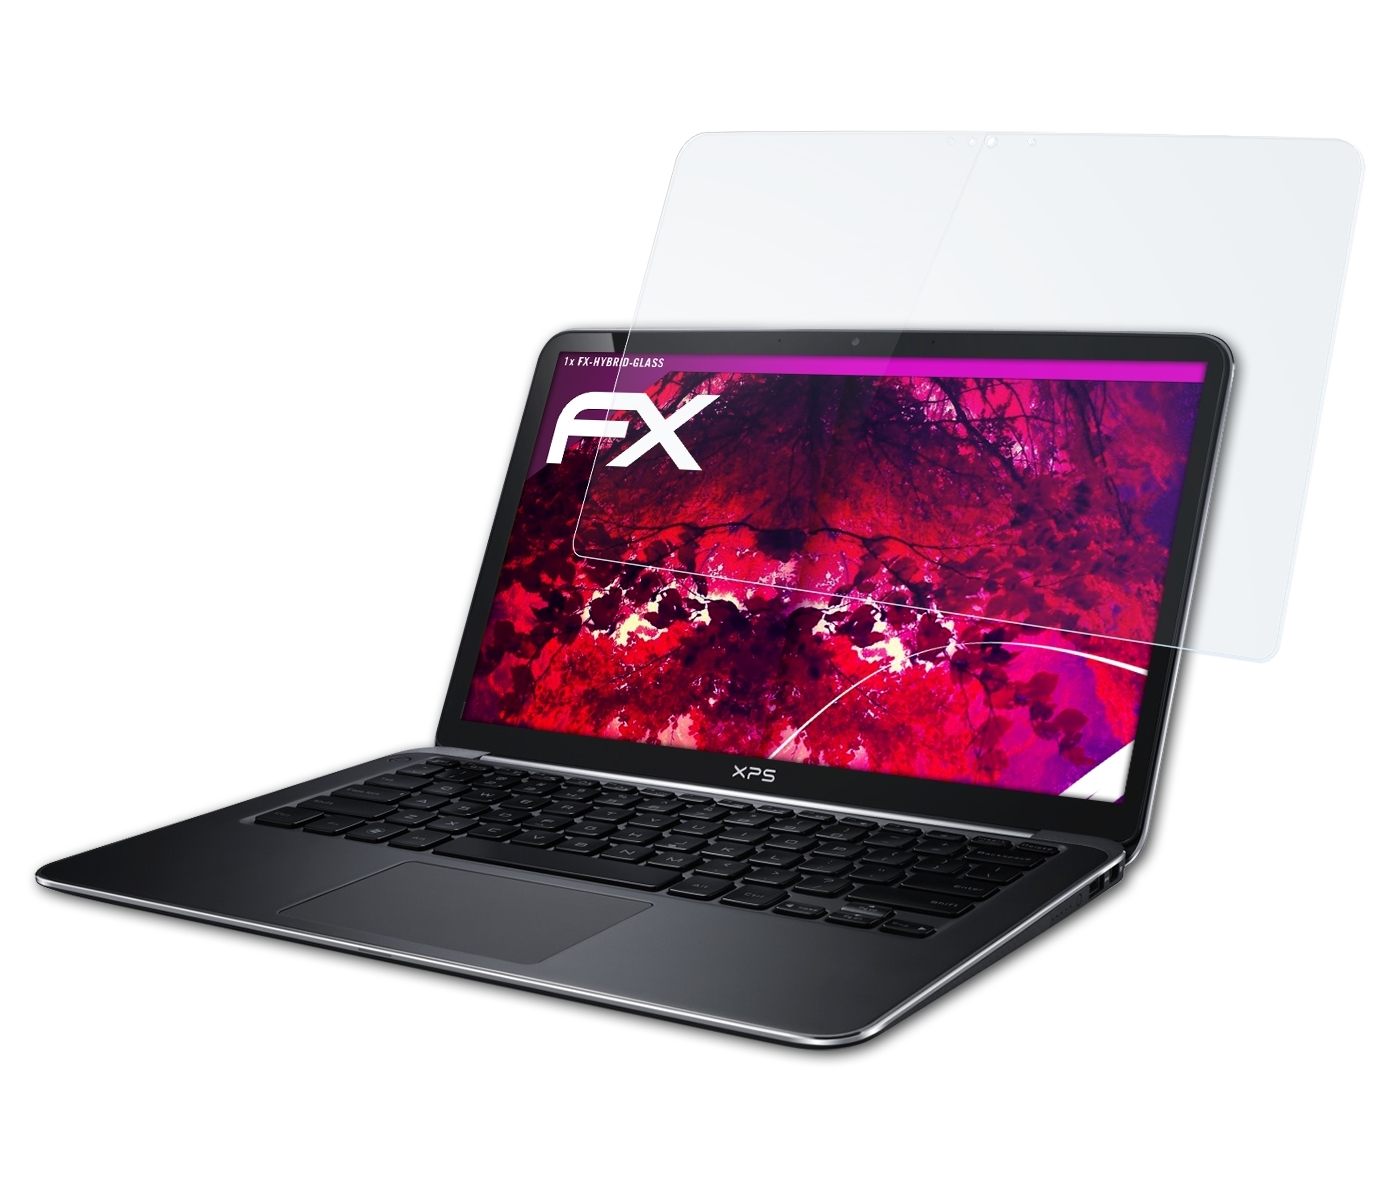 (9333, XPS FX-Hybrid-Glass Schutzglas(für Dell 13 2014)) ATFOLIX Ultrabook Version